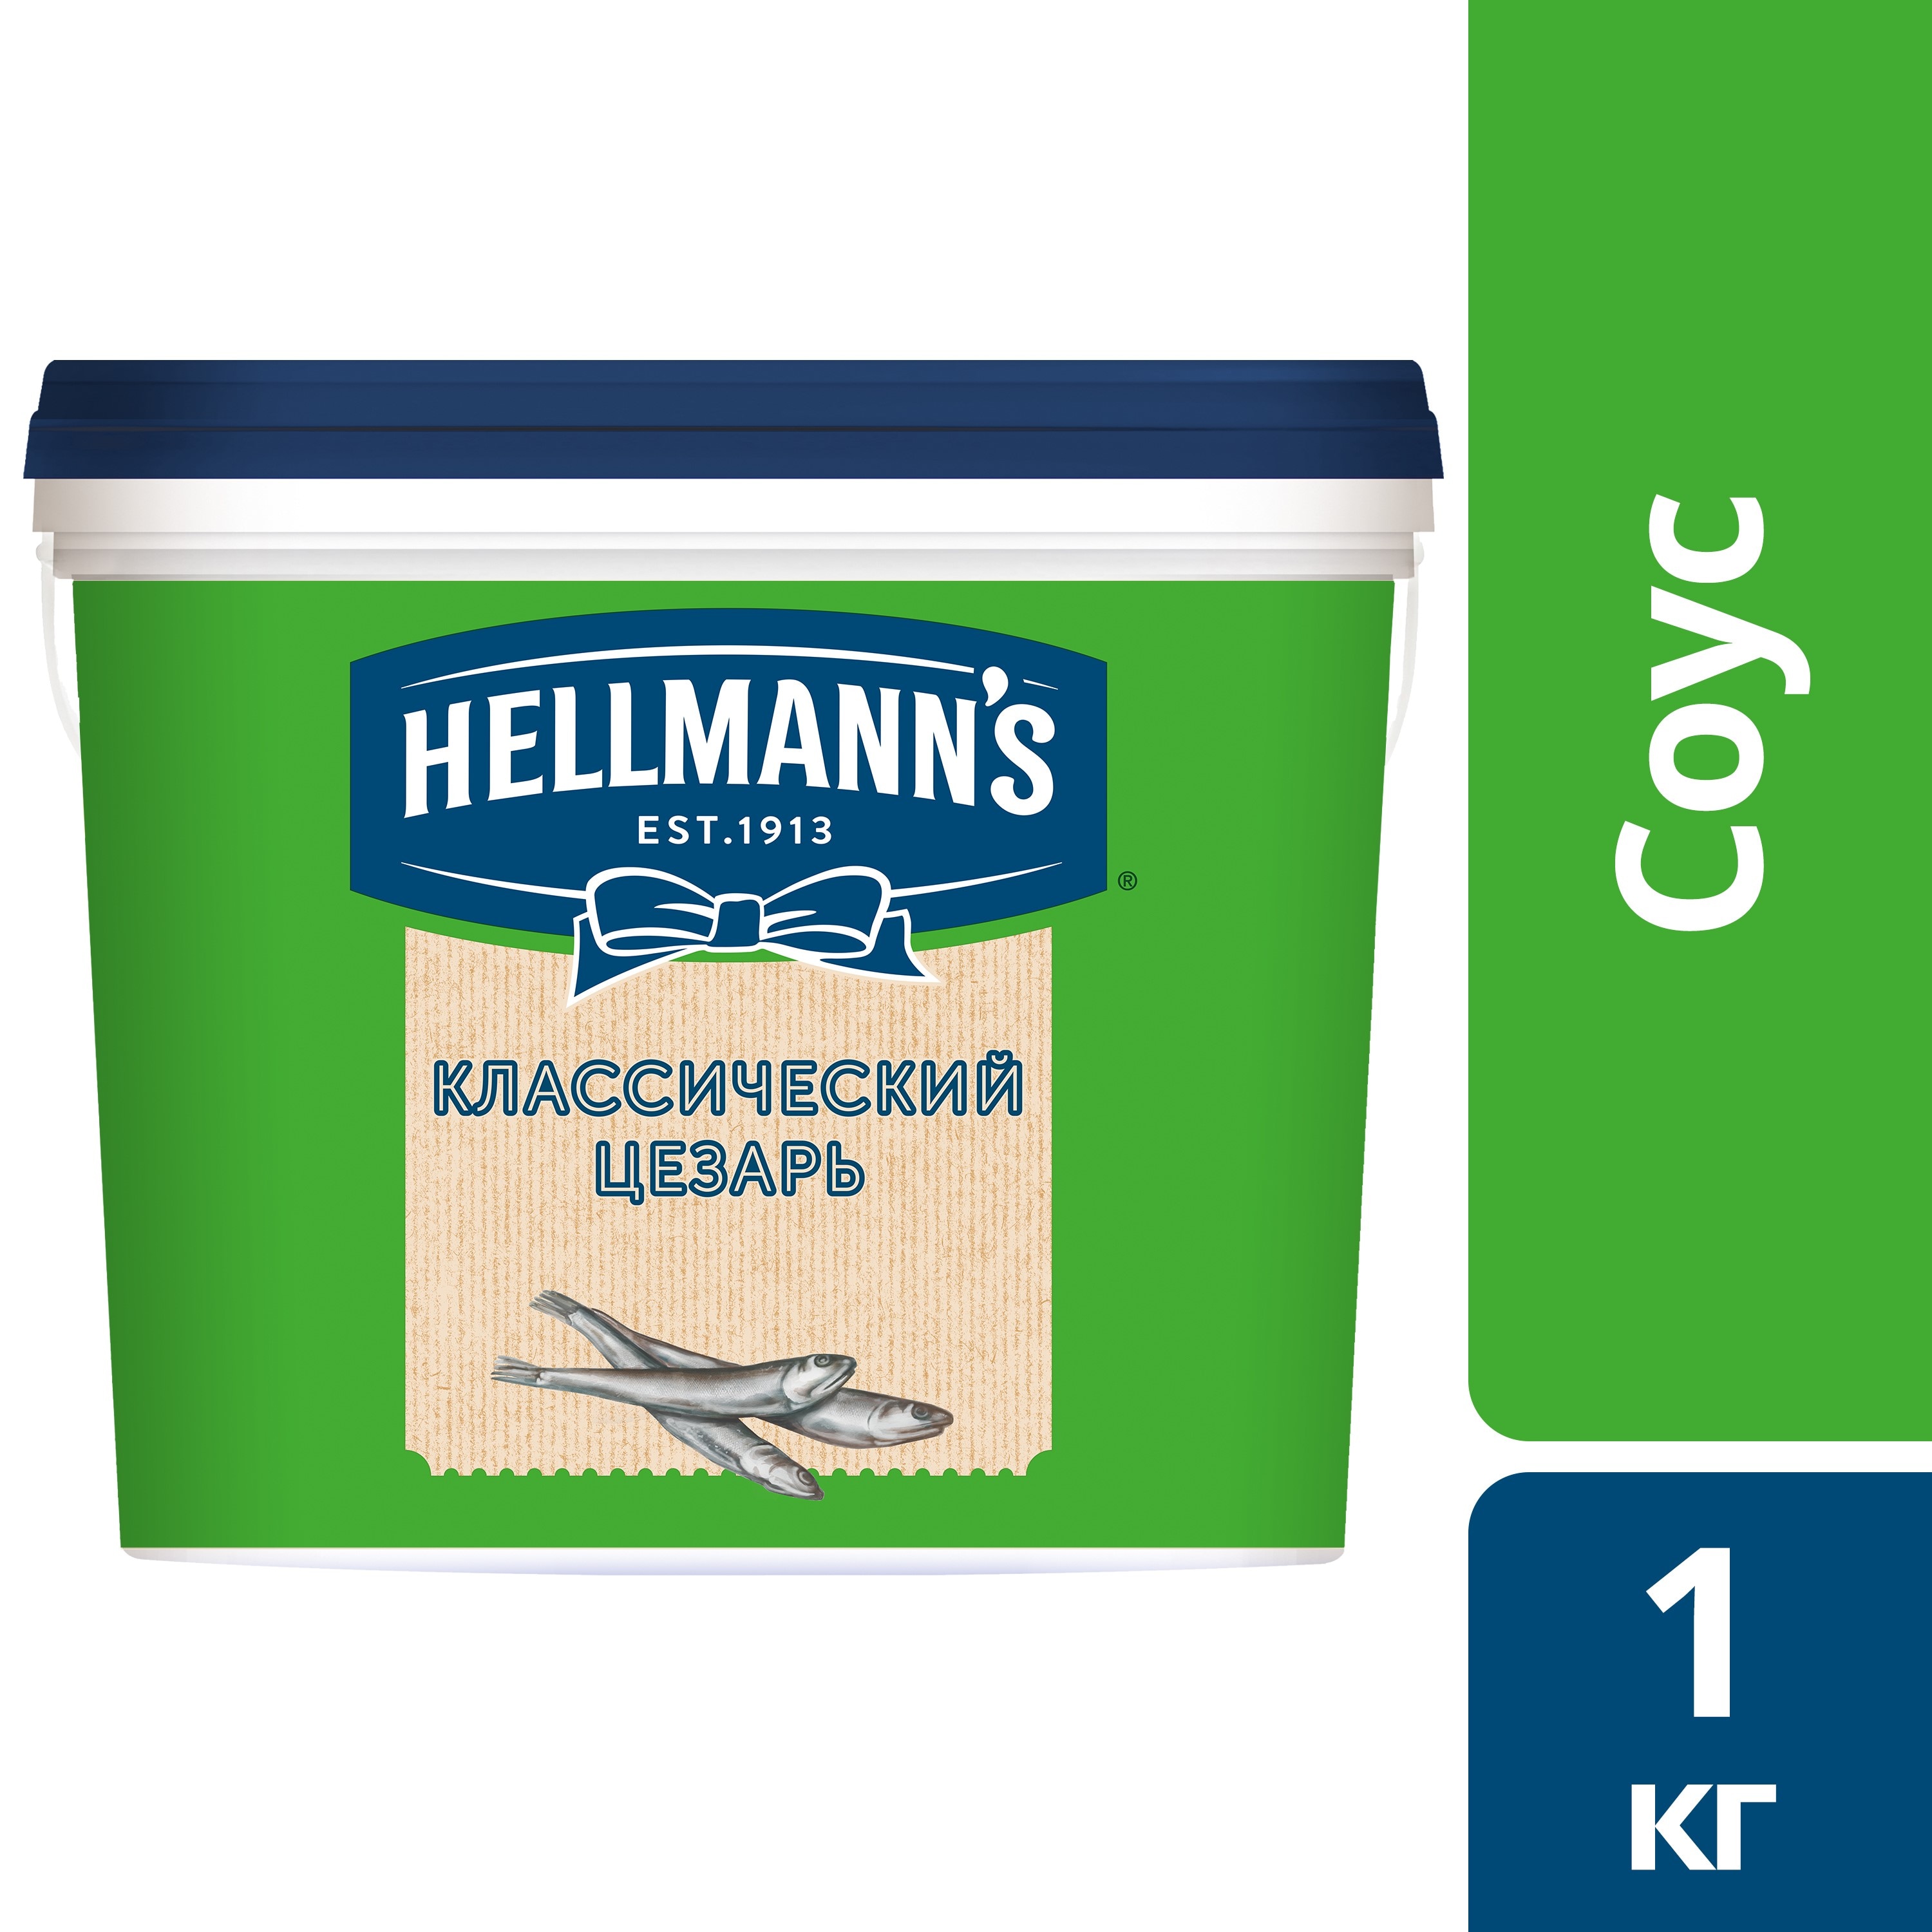 HELLMANN'S СОУС КЛАССИЧЕСКИЙ ЦЕЗАРЬ (1 кг) - Соус Hellmann's Классический Цезарь придаст яркий вкус разнообразным салатам, сэндвичам, бургерам, станет отличным дип-соусом для горячих блюд и закусок.